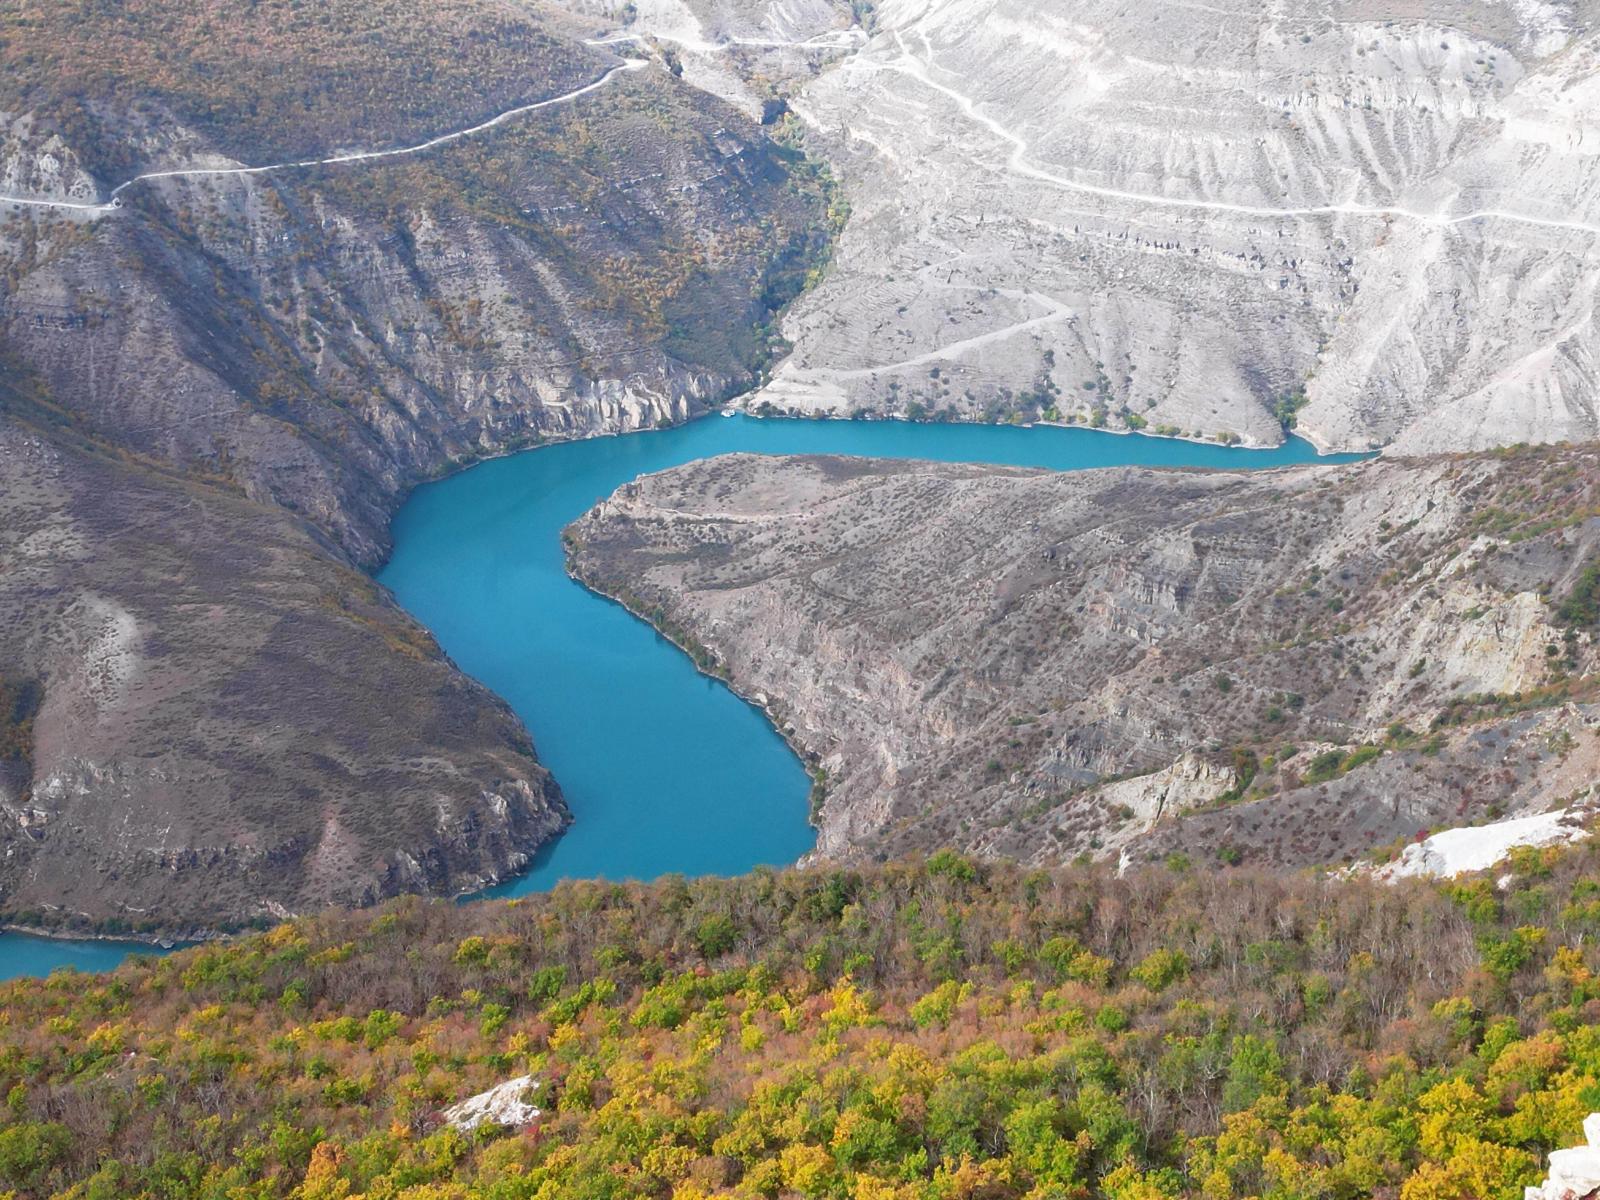 Джип-тур по Северному Кавказу: сколько это стоит, чего опасаться, и где находятся самые красивые локации - image 1